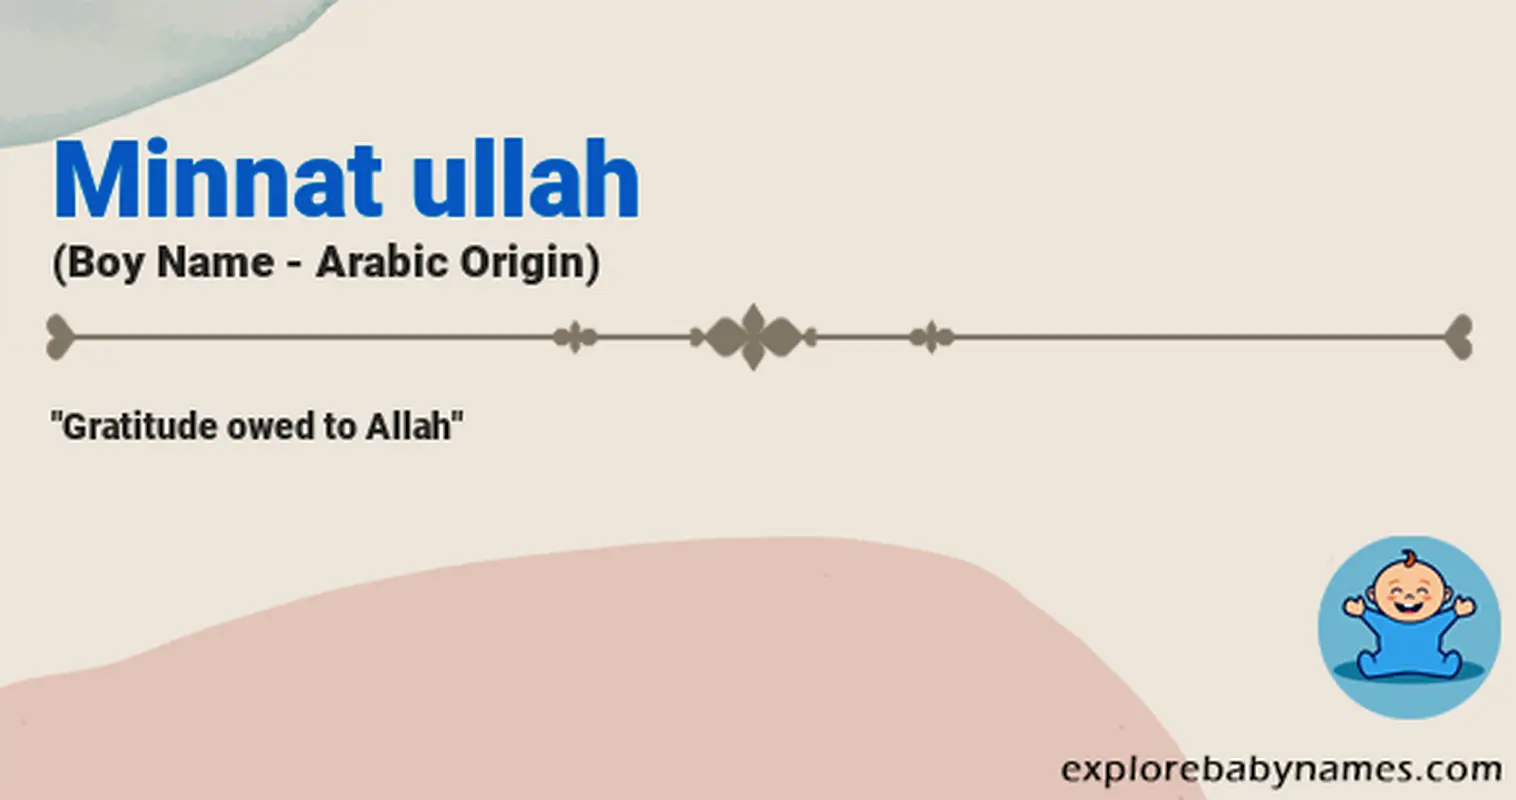 Meaning of Minnat ullah